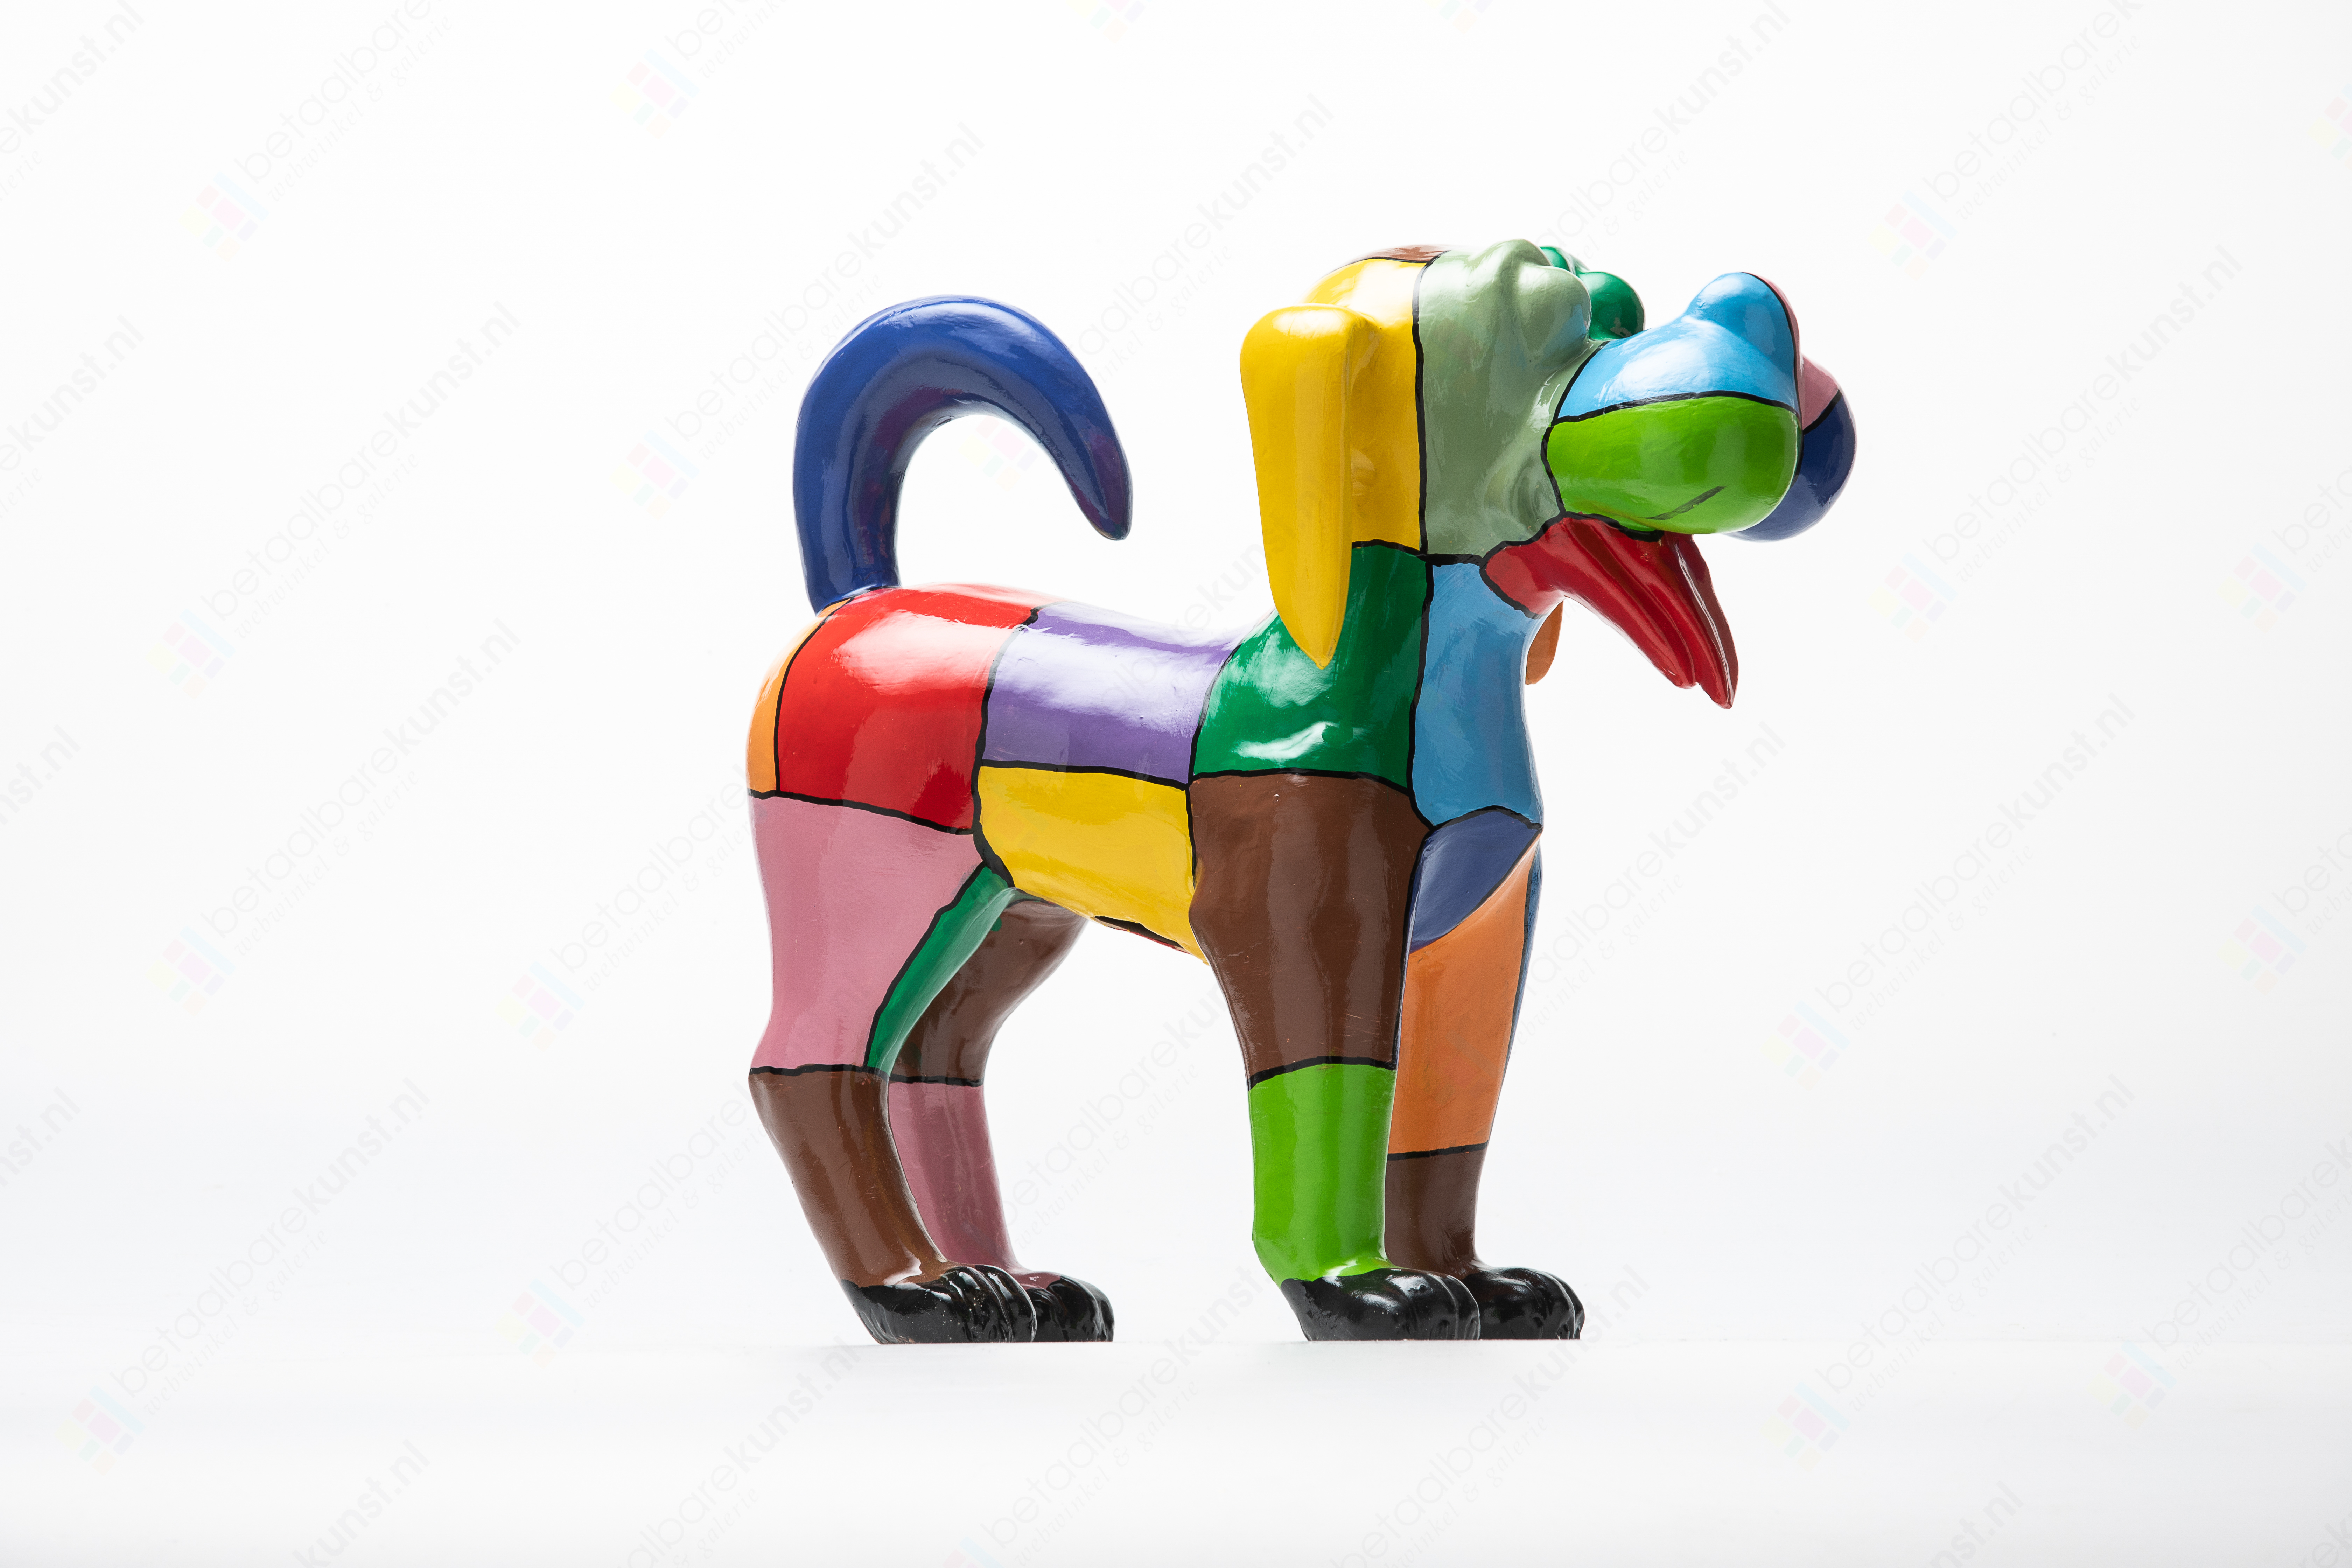 "Hondje Picasso" te koop @ Betaalbarekunst.nl. Deze beeldende kunst van kunststof is een verrijking voor je huis.